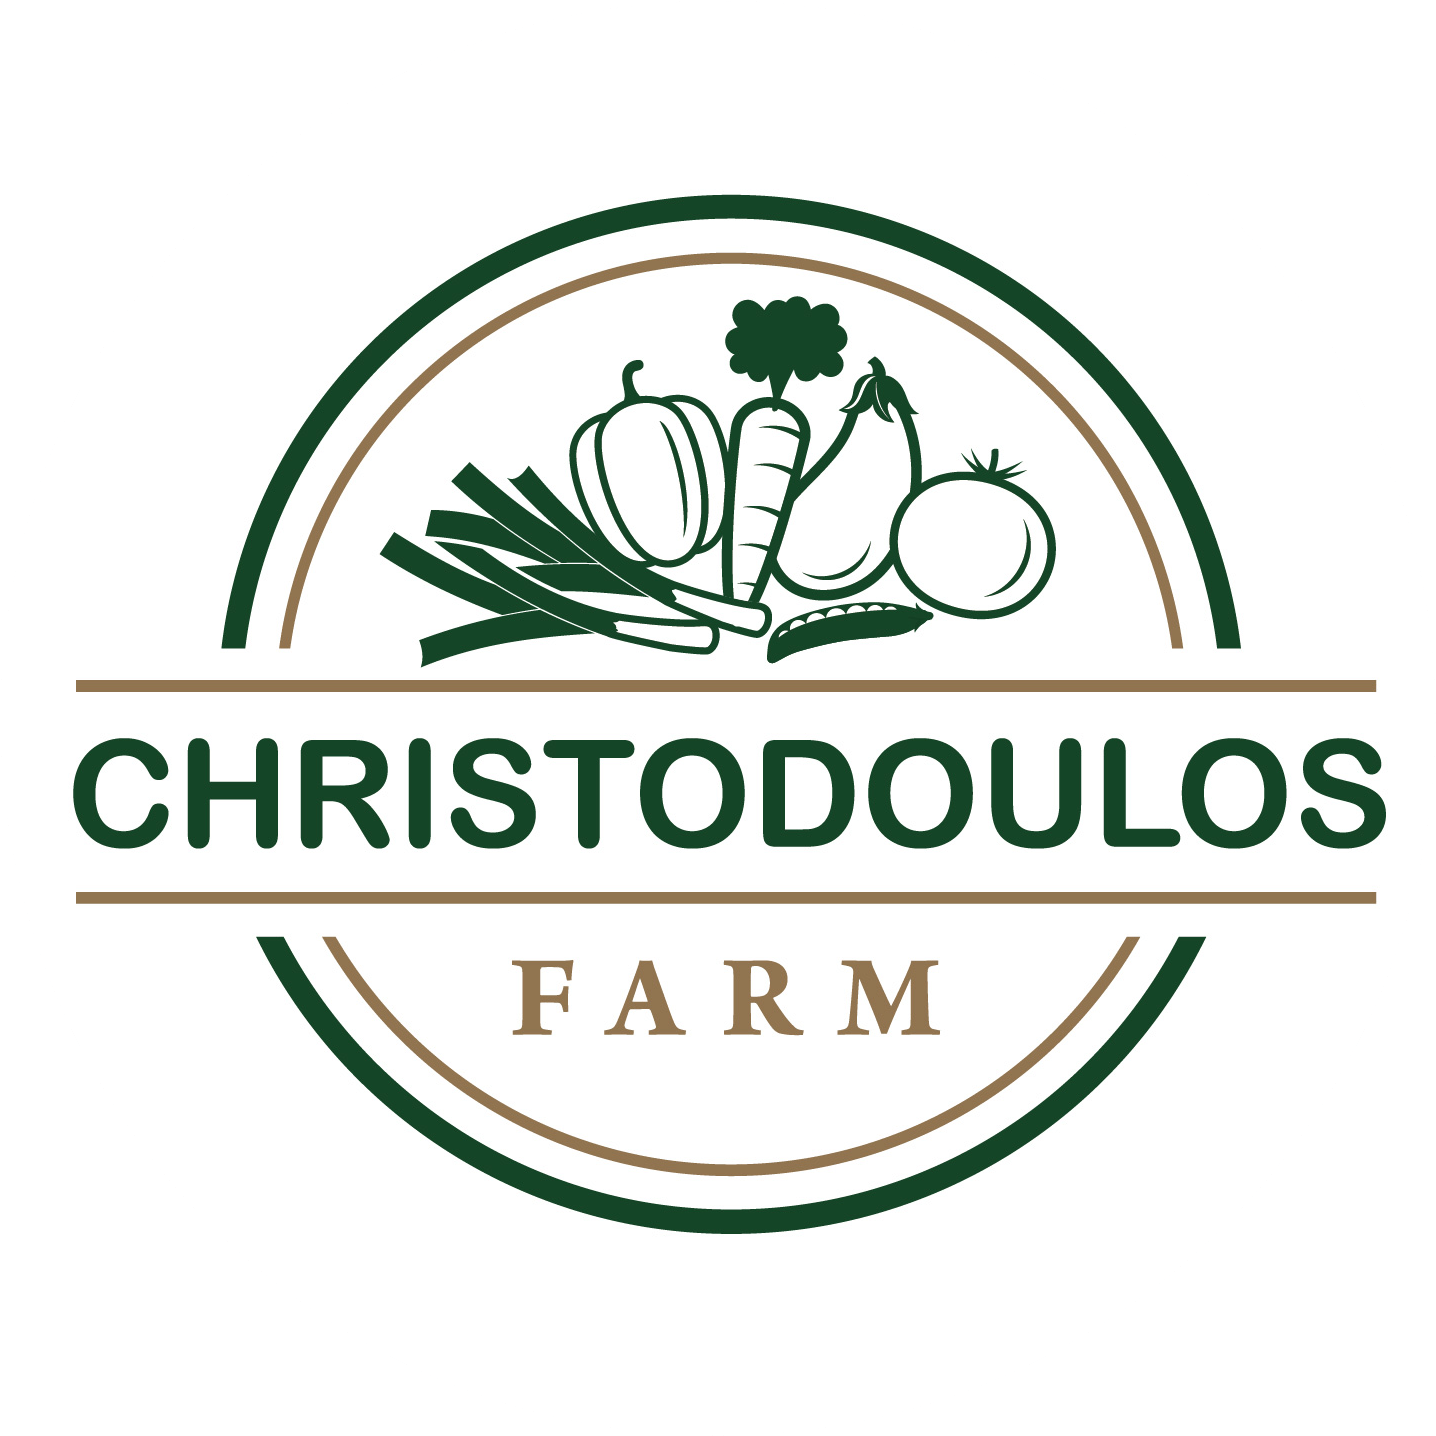 Christodoulos farm ltd